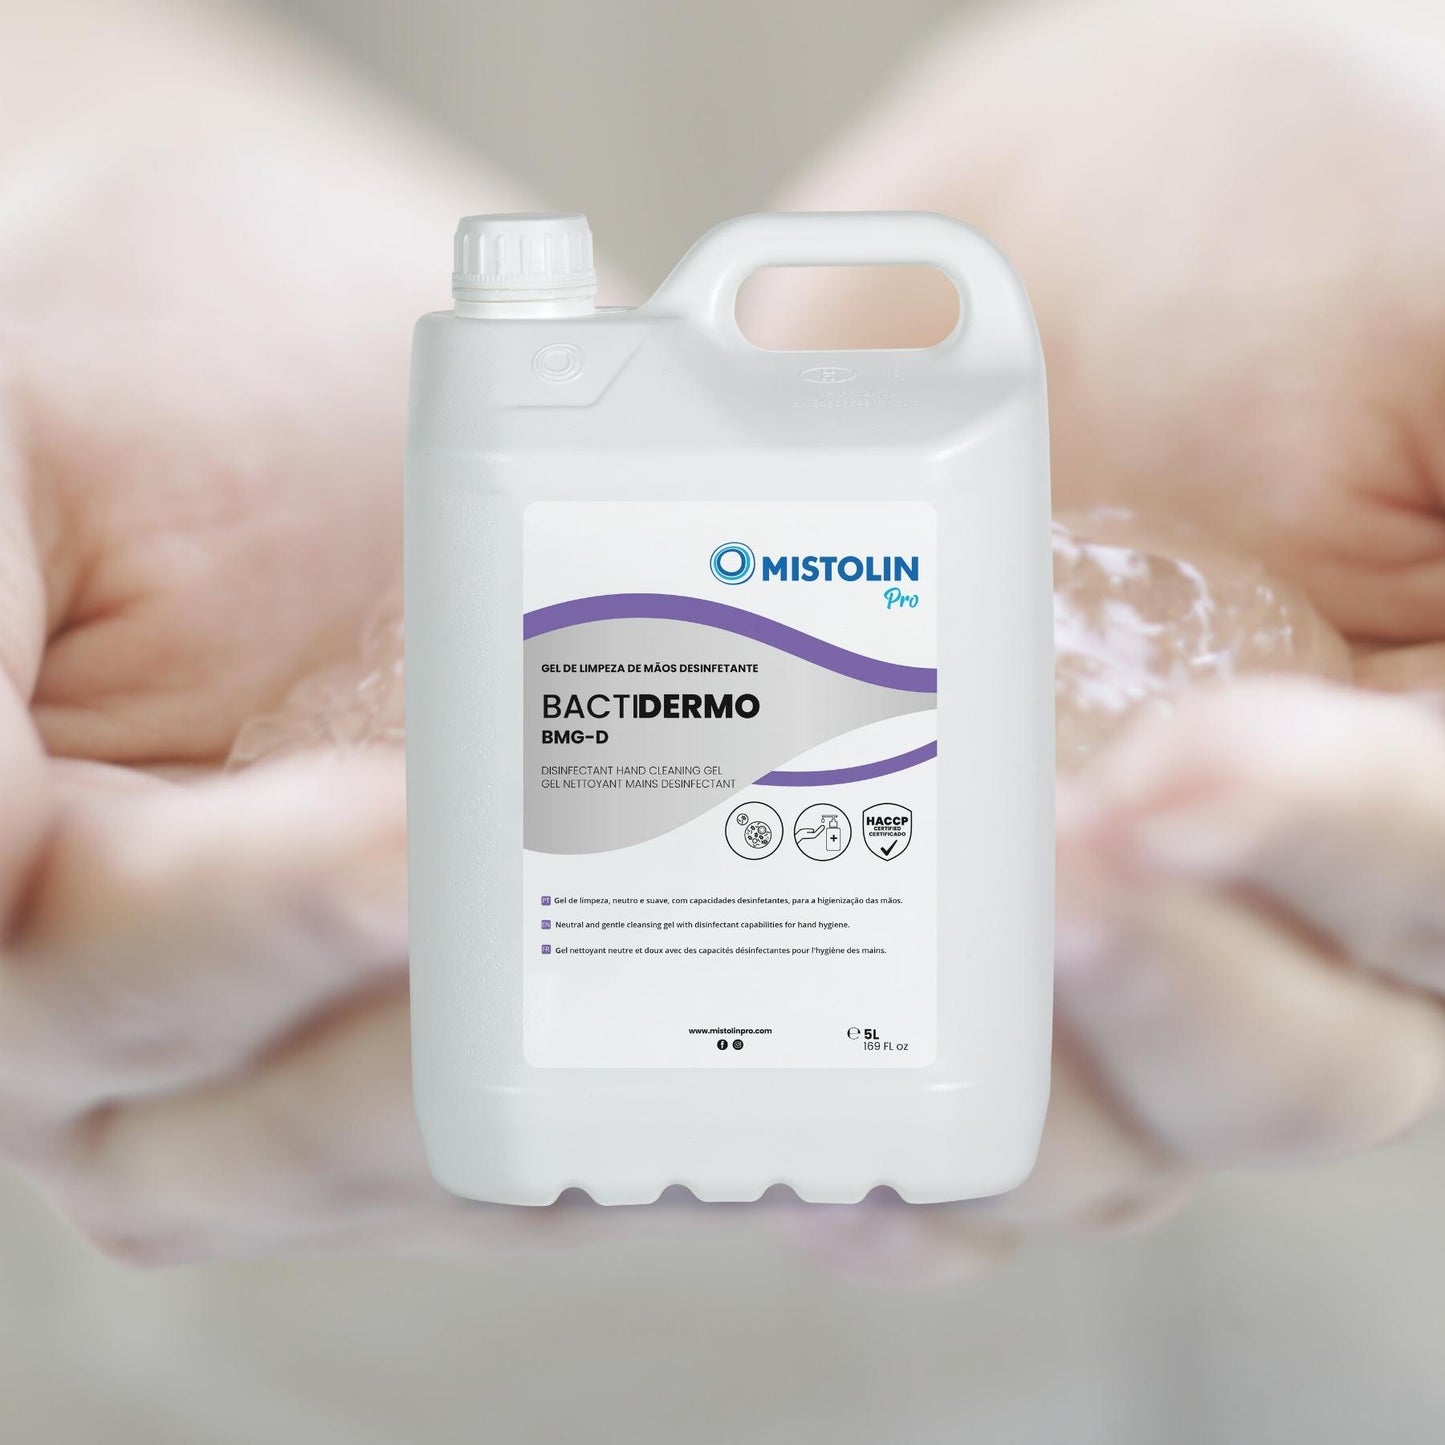 DERMOCARE BACTIDERMO BMG-D GEL MAOS BACTERICIDA 5L, é um gel de limpeza, neutro e suave, com capacidades desinfetantes para a higienização das mãos.